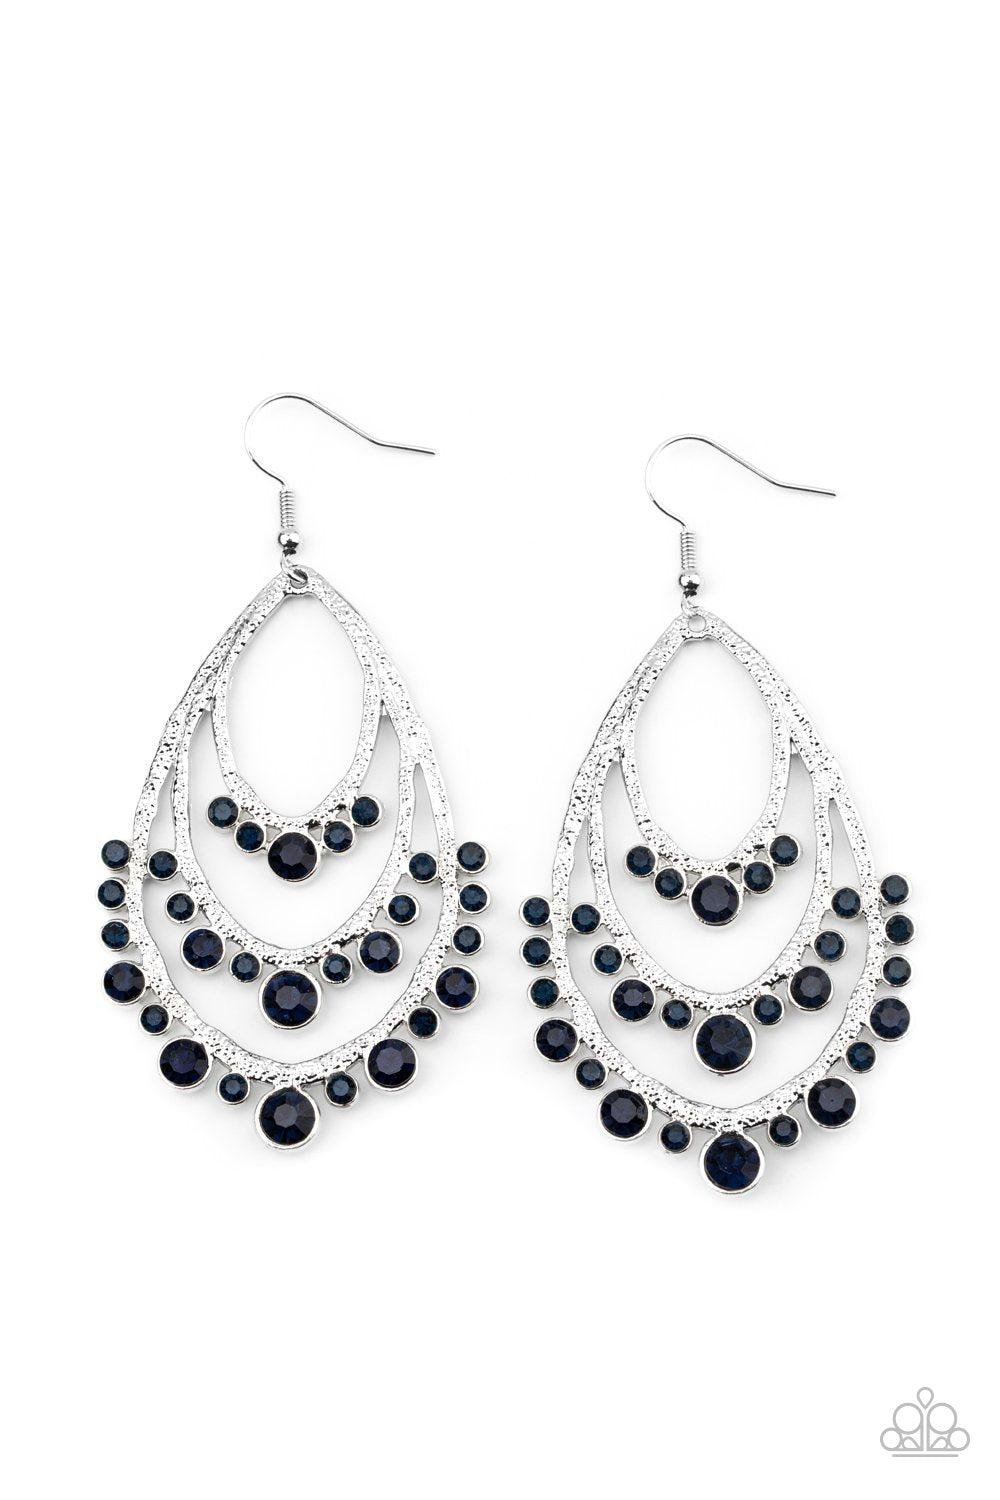 Break Out In TIERS Blue Rhinestone Teardrop Earrings - Paparazzi Accessories - lightbox -CarasShop.com - $5 Jewelry by Cara Jewels